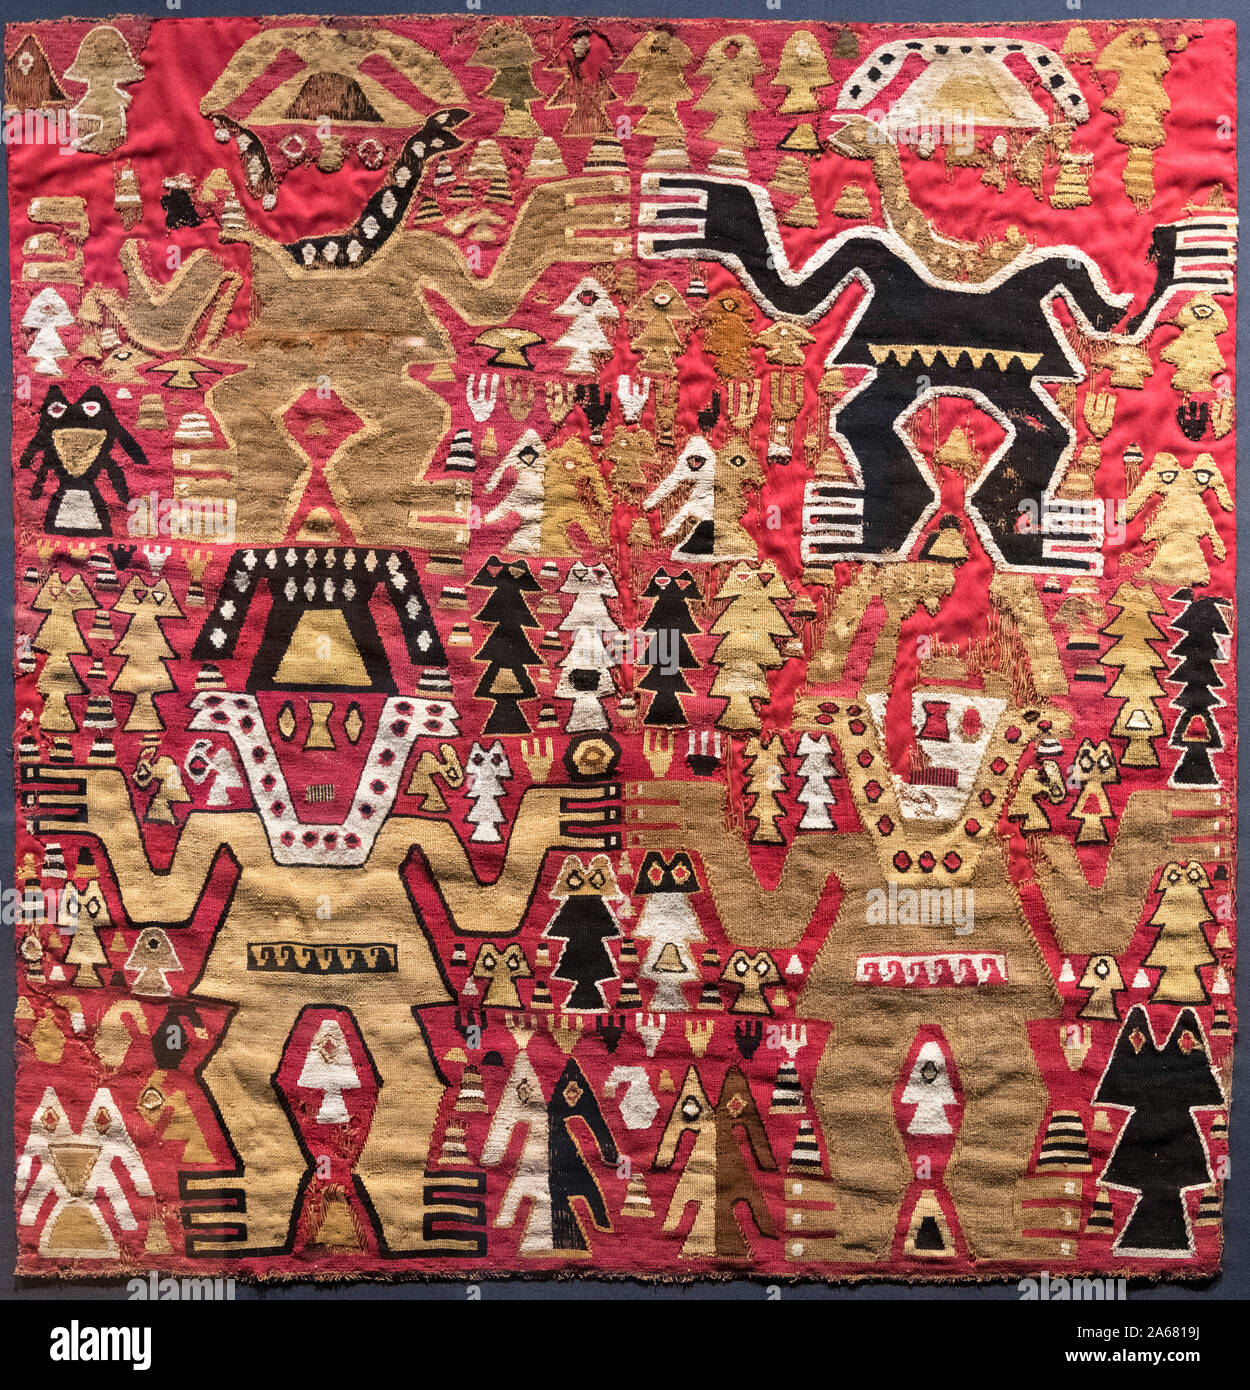 Nativo del Perú precolombino tela ceremonial de la cultura Chimú, 1350 AD a 1450 AD, Museo de Arte de Lima, Perú, América del Sur Foto de stock